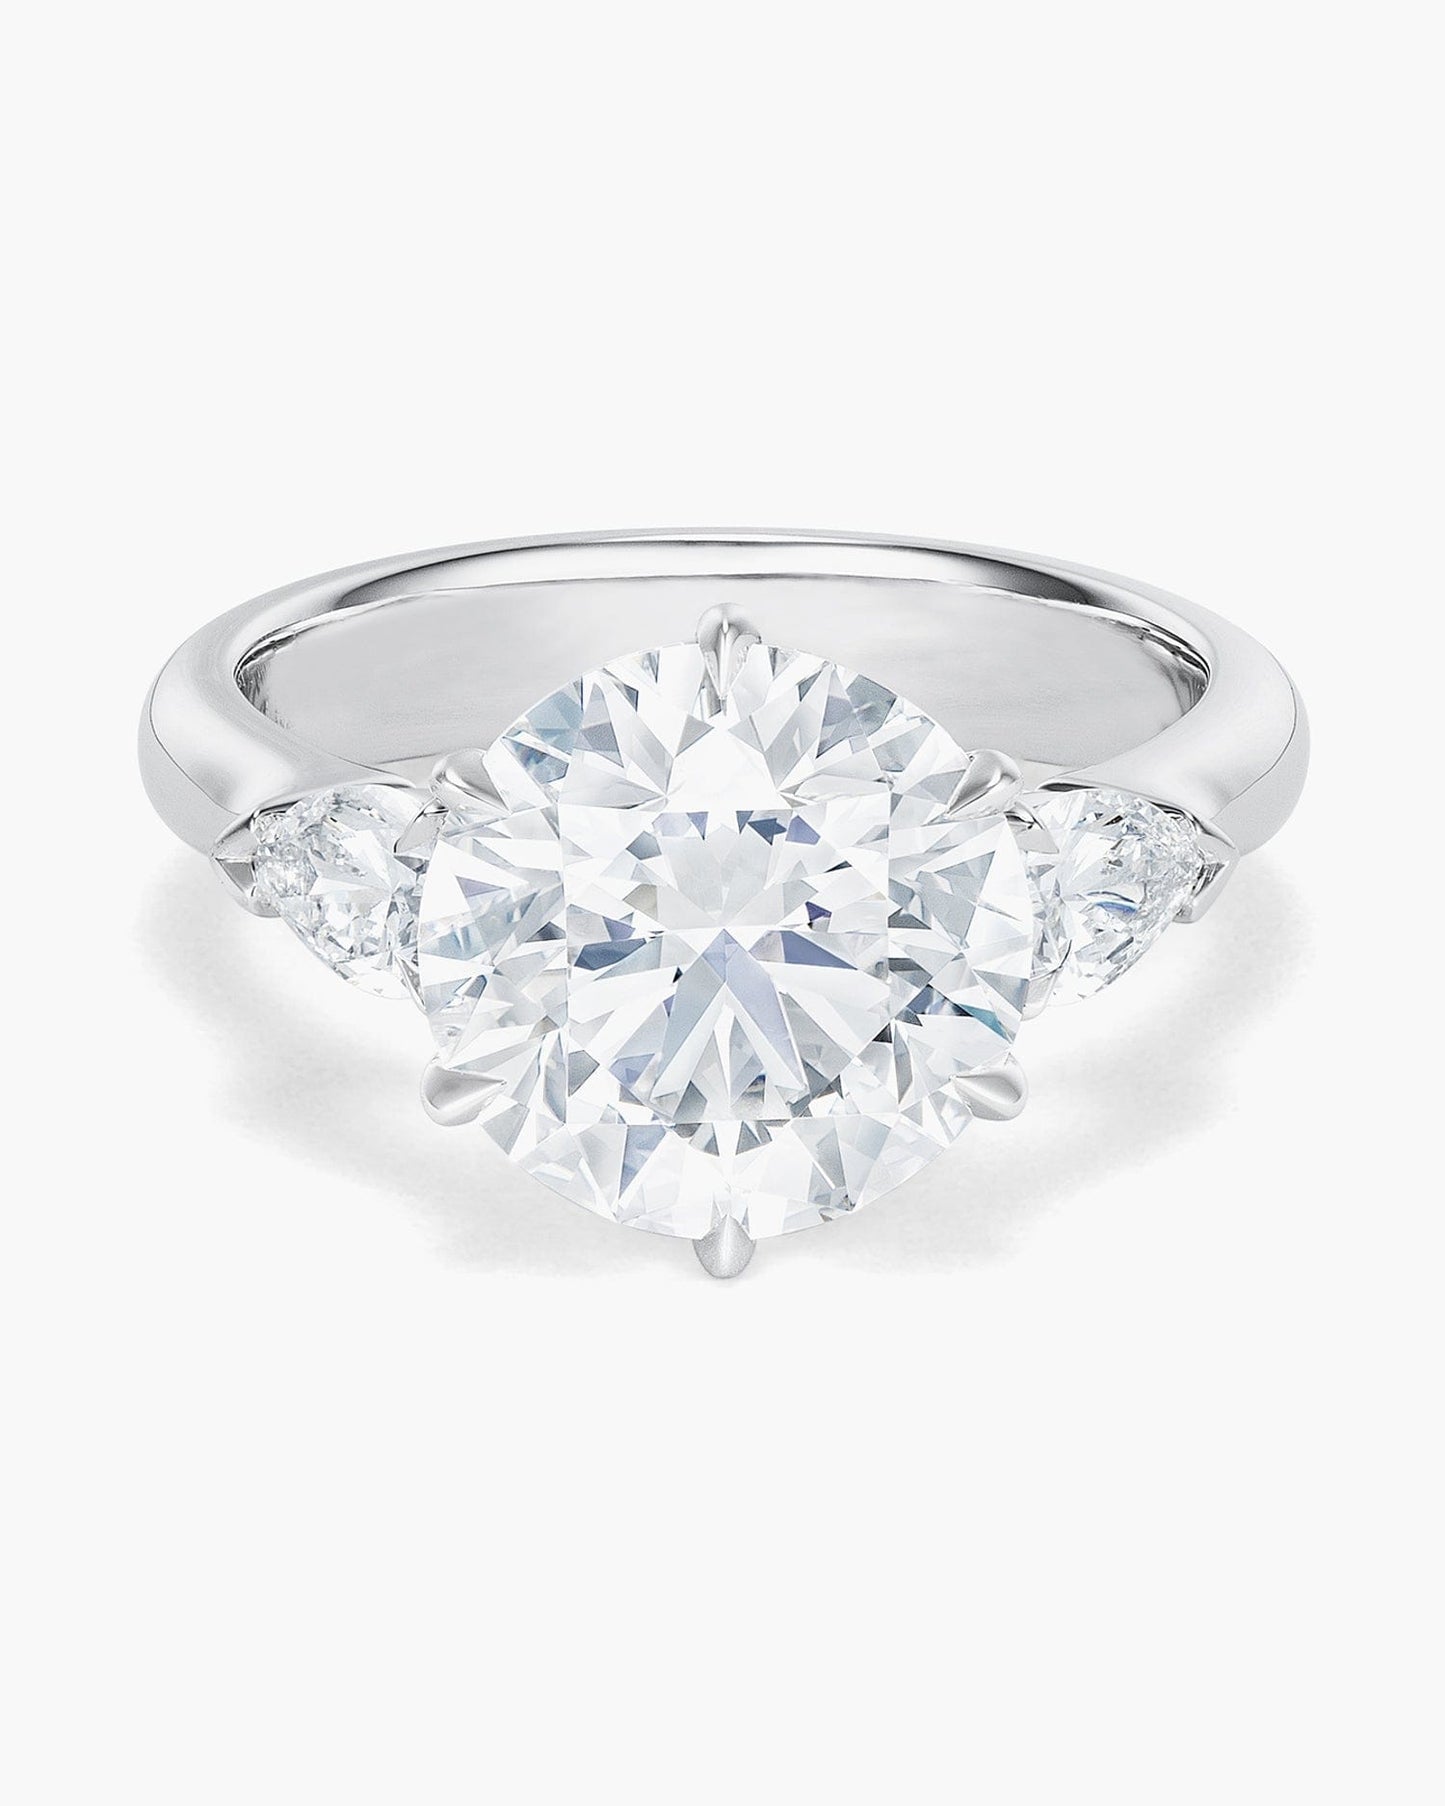 3.87 carat Round Brilliant Cut Diamond Ring